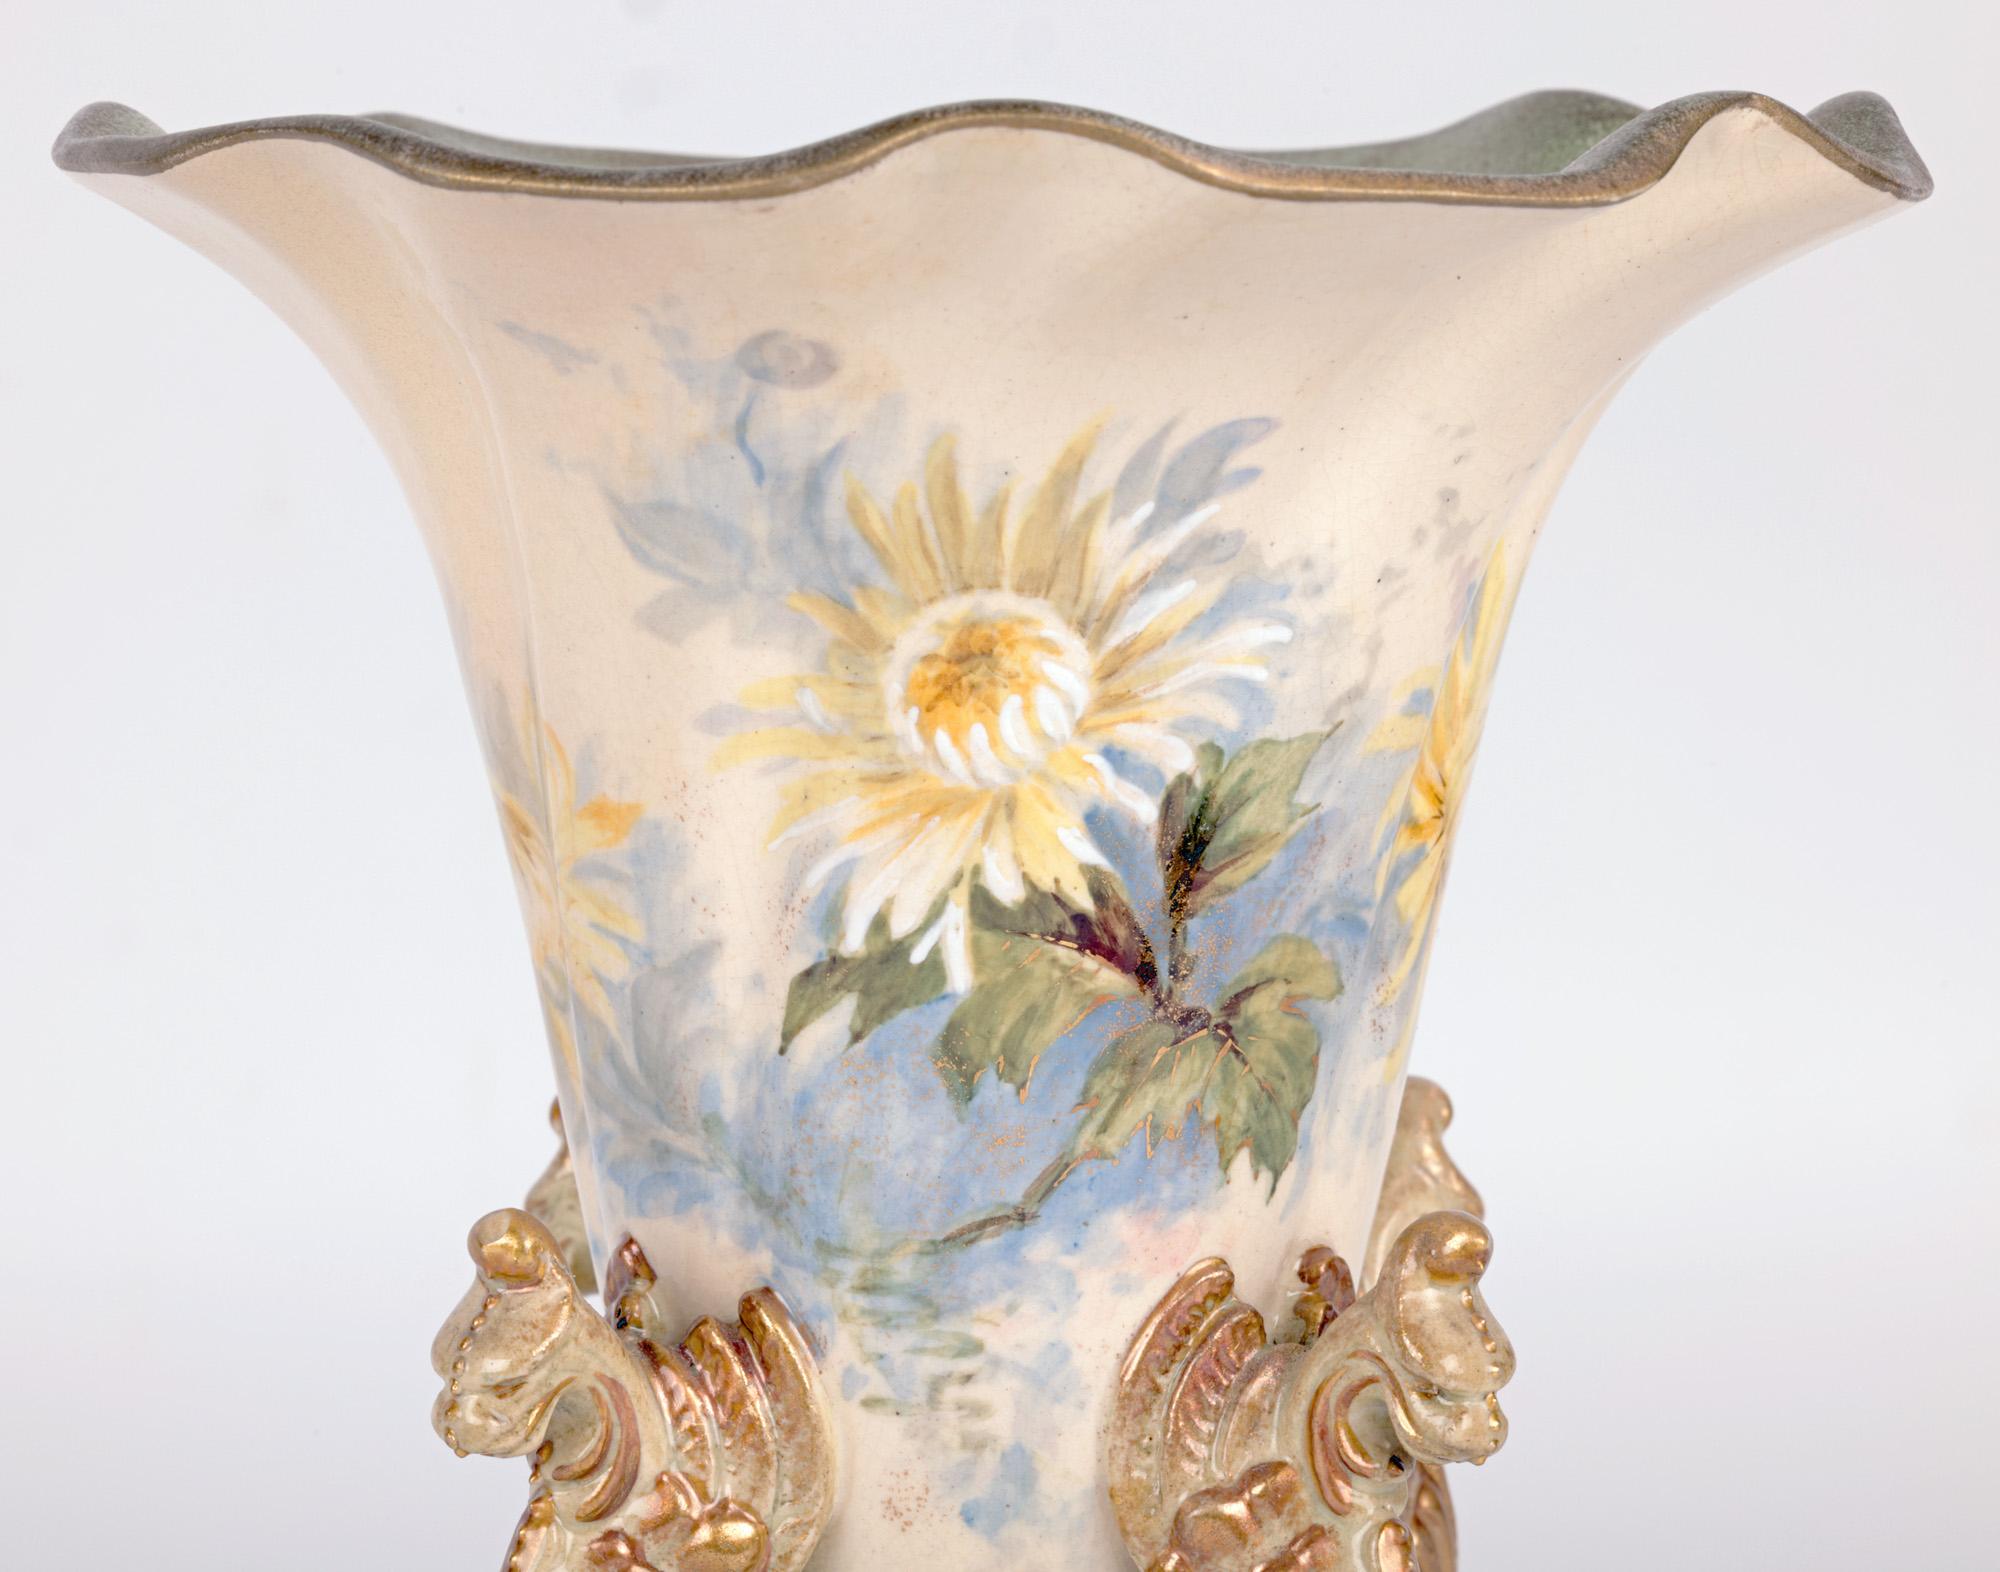 Un vase inhabituel en forme de trompette en Lambeth Ware, peint de motifs floraux et monté avec des créatures mythiques ressemblant à des griffons, datant d'environ 1895. Le vase en grès est surélevé et repose sur une haute base en volutes percées,